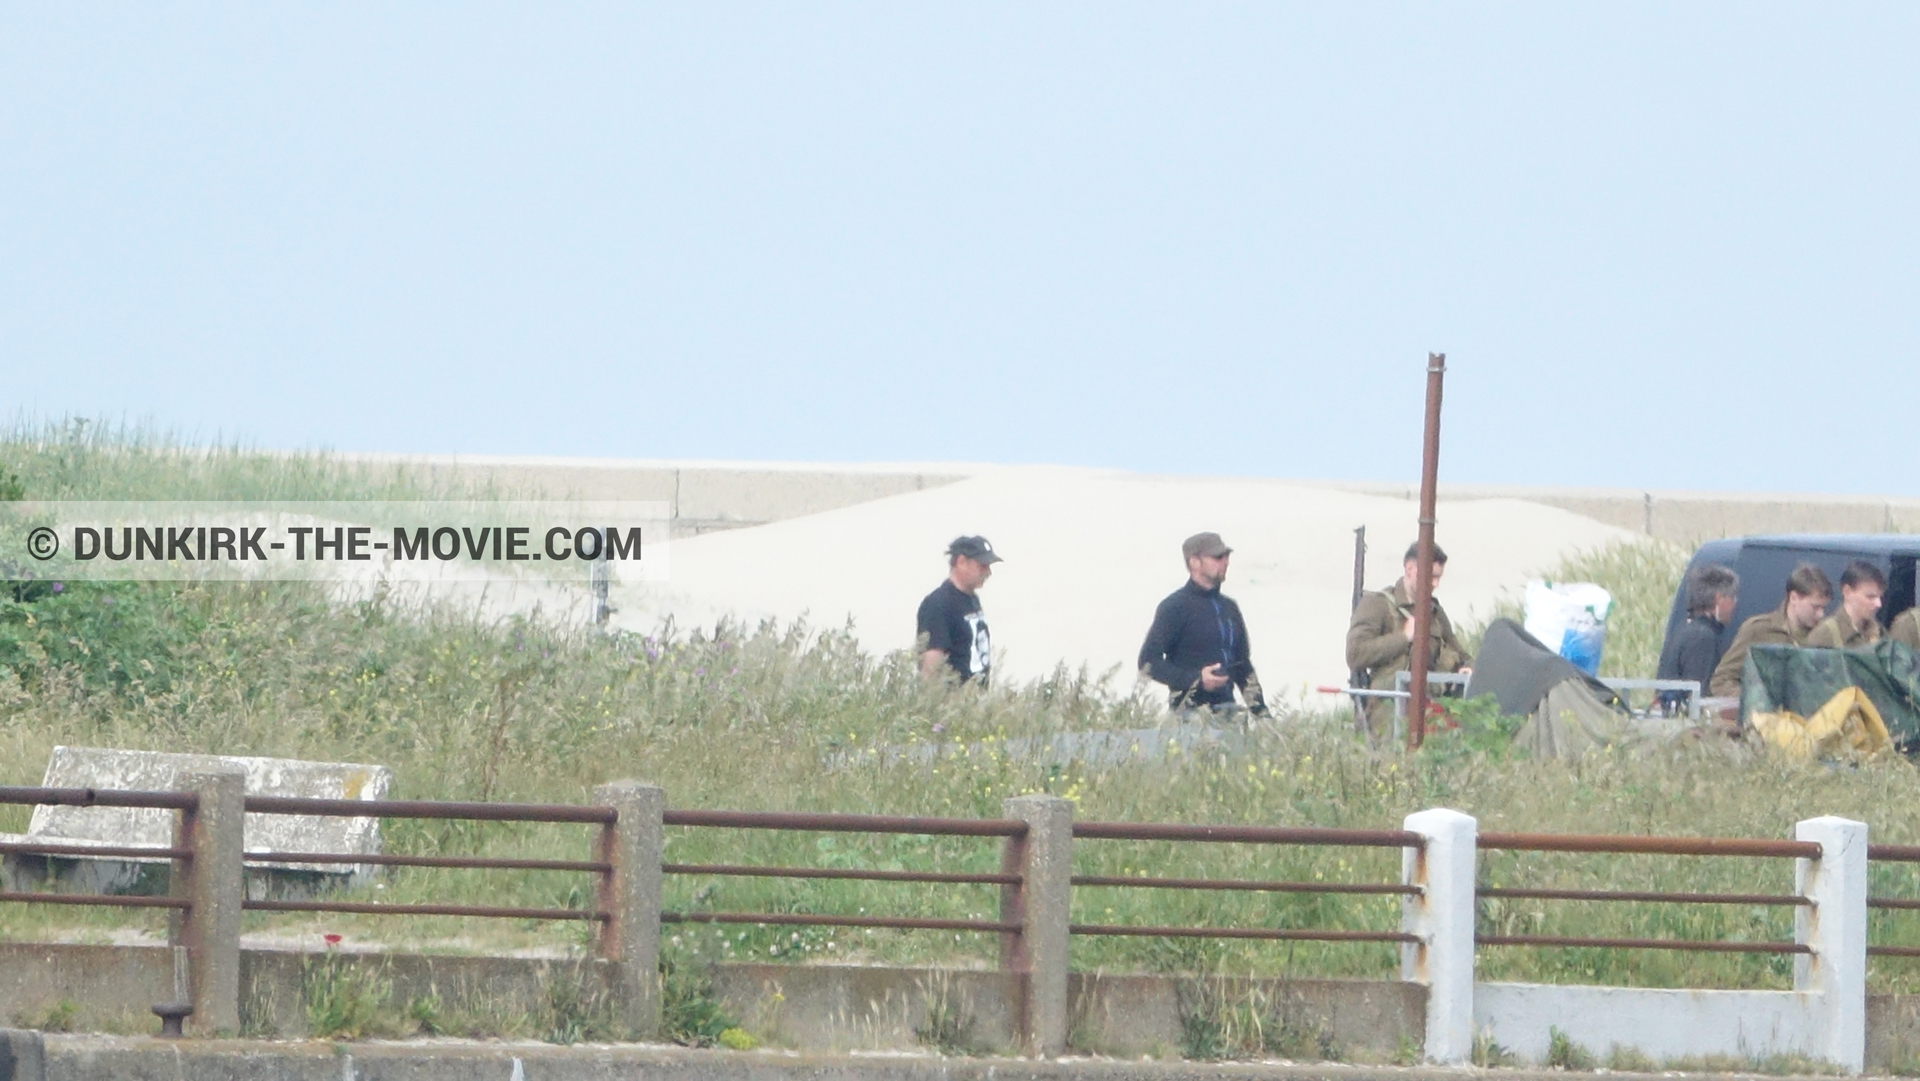 Fotos con actor, equipo técnica,  durante el rodaje de la película Dunkerque de Nolan